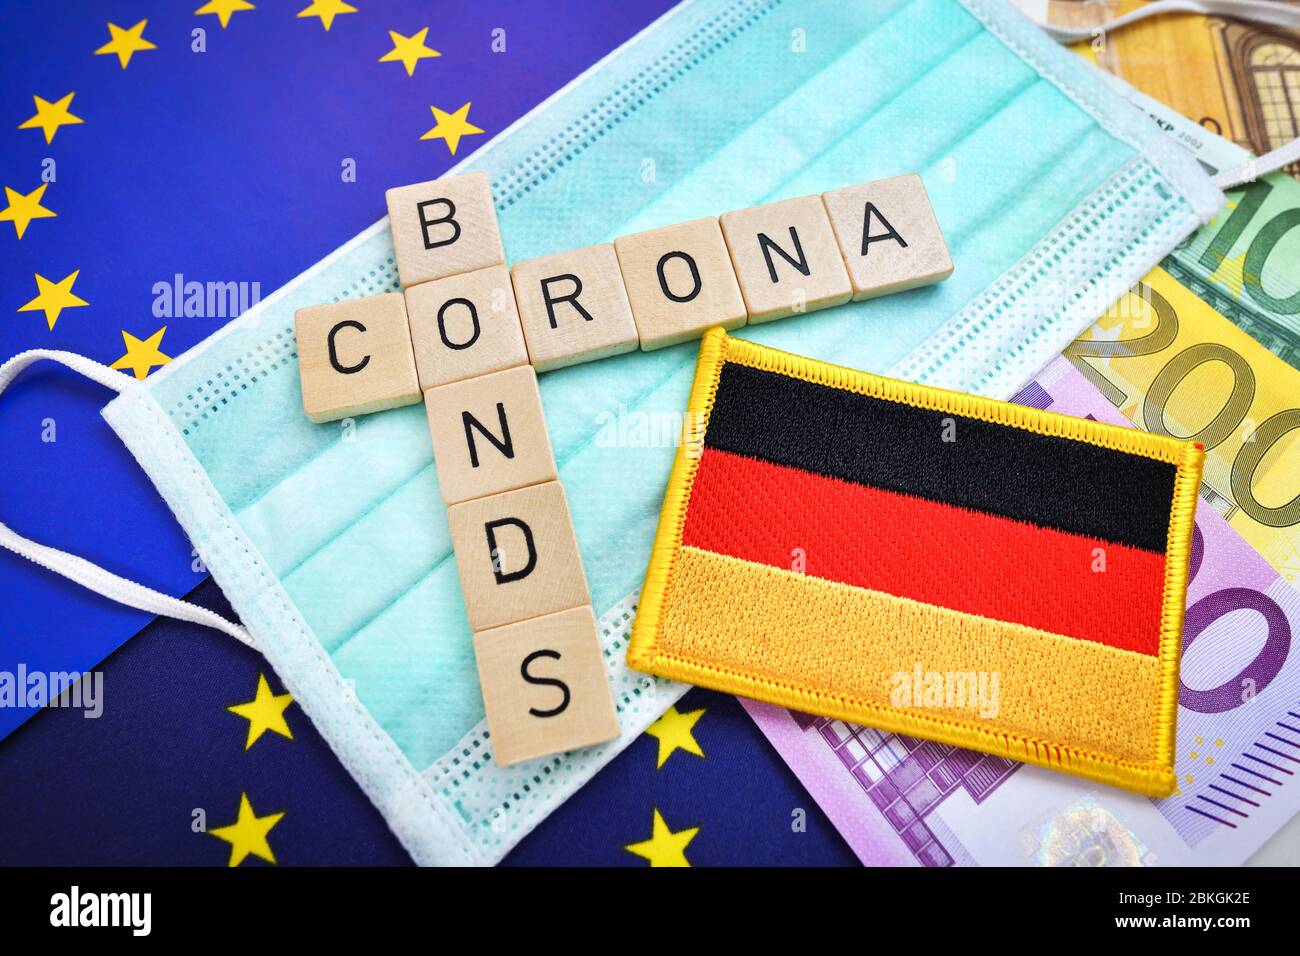 Letras que deletrea la palabra corona Bonds en el lutorio con la bandera de la UE y Alemania / Buchstaben bilden Schriftzug Corona-Bonds auf Mundschutz mit EU- Foto de stock